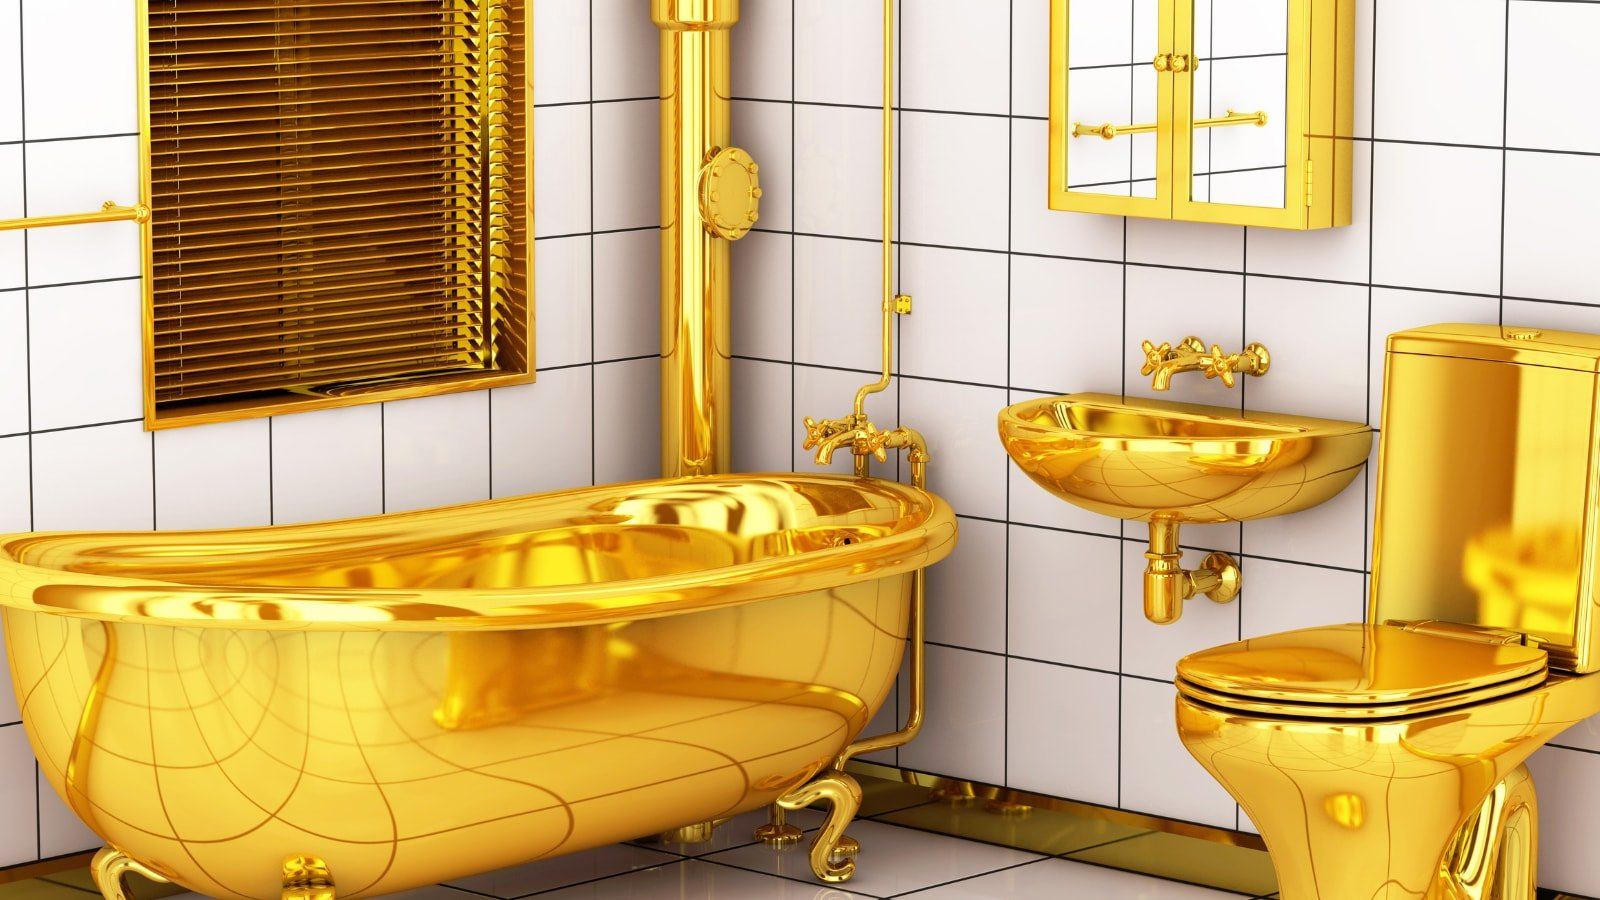 Золотистая ванна. SIMS 4 золотой унитаз. Золотая ванна. Унитаз под золото. Ванна с золотым унитазом.